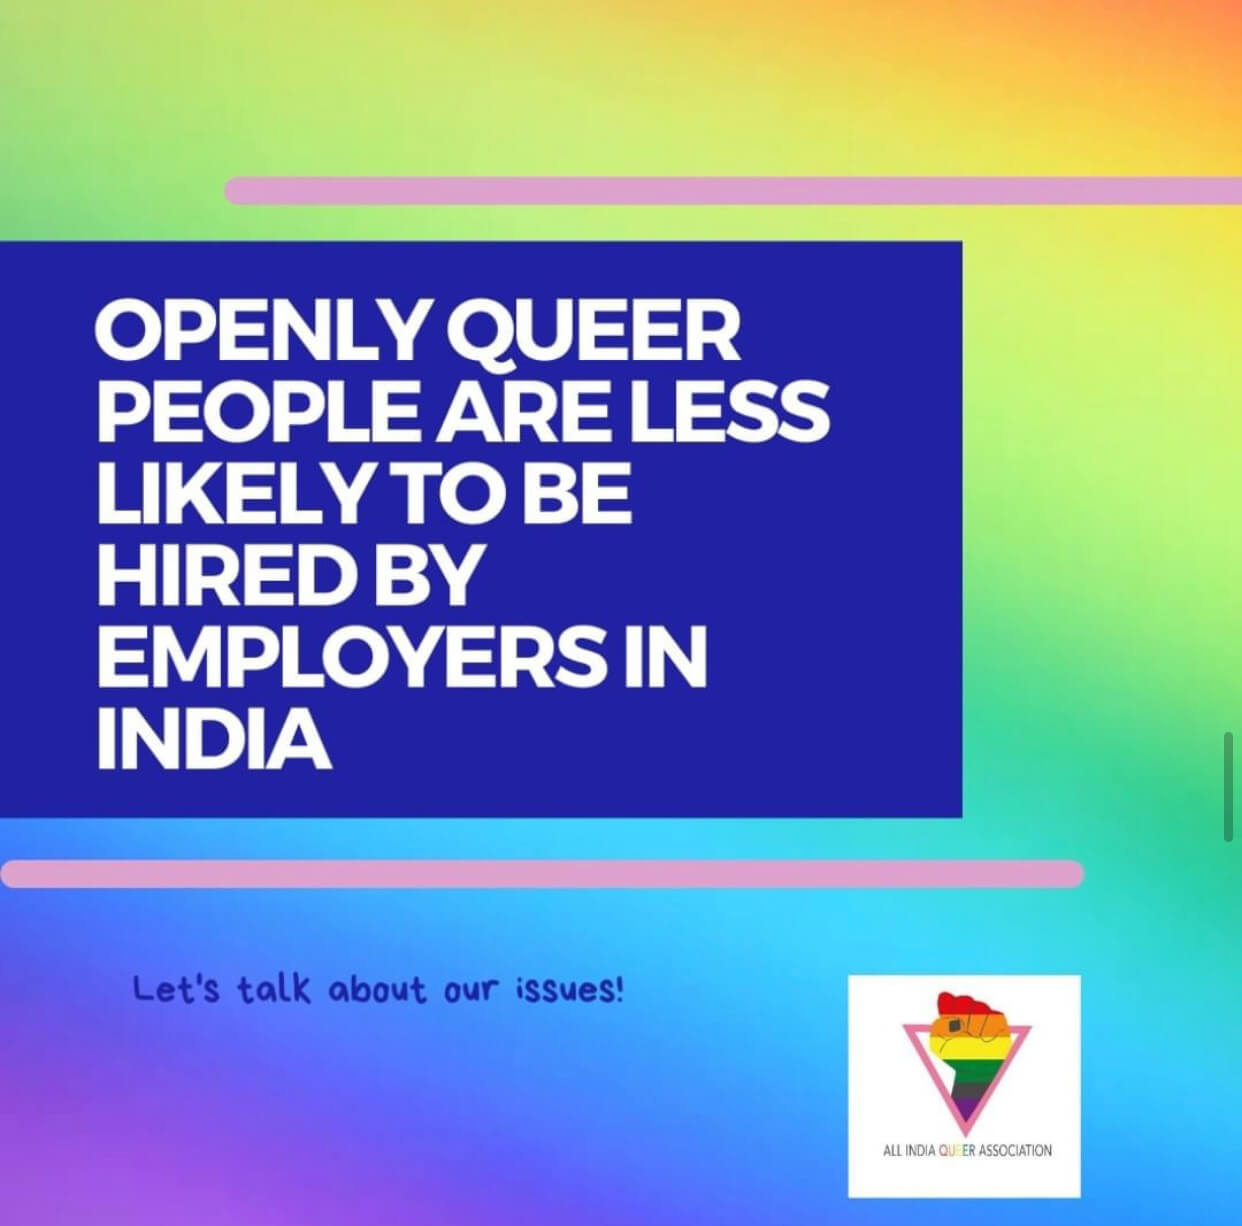 "La polizia è violenta con le persone queer", parla la comunità LGBTQIA+ indiana - IMG 3233 - Gay.it